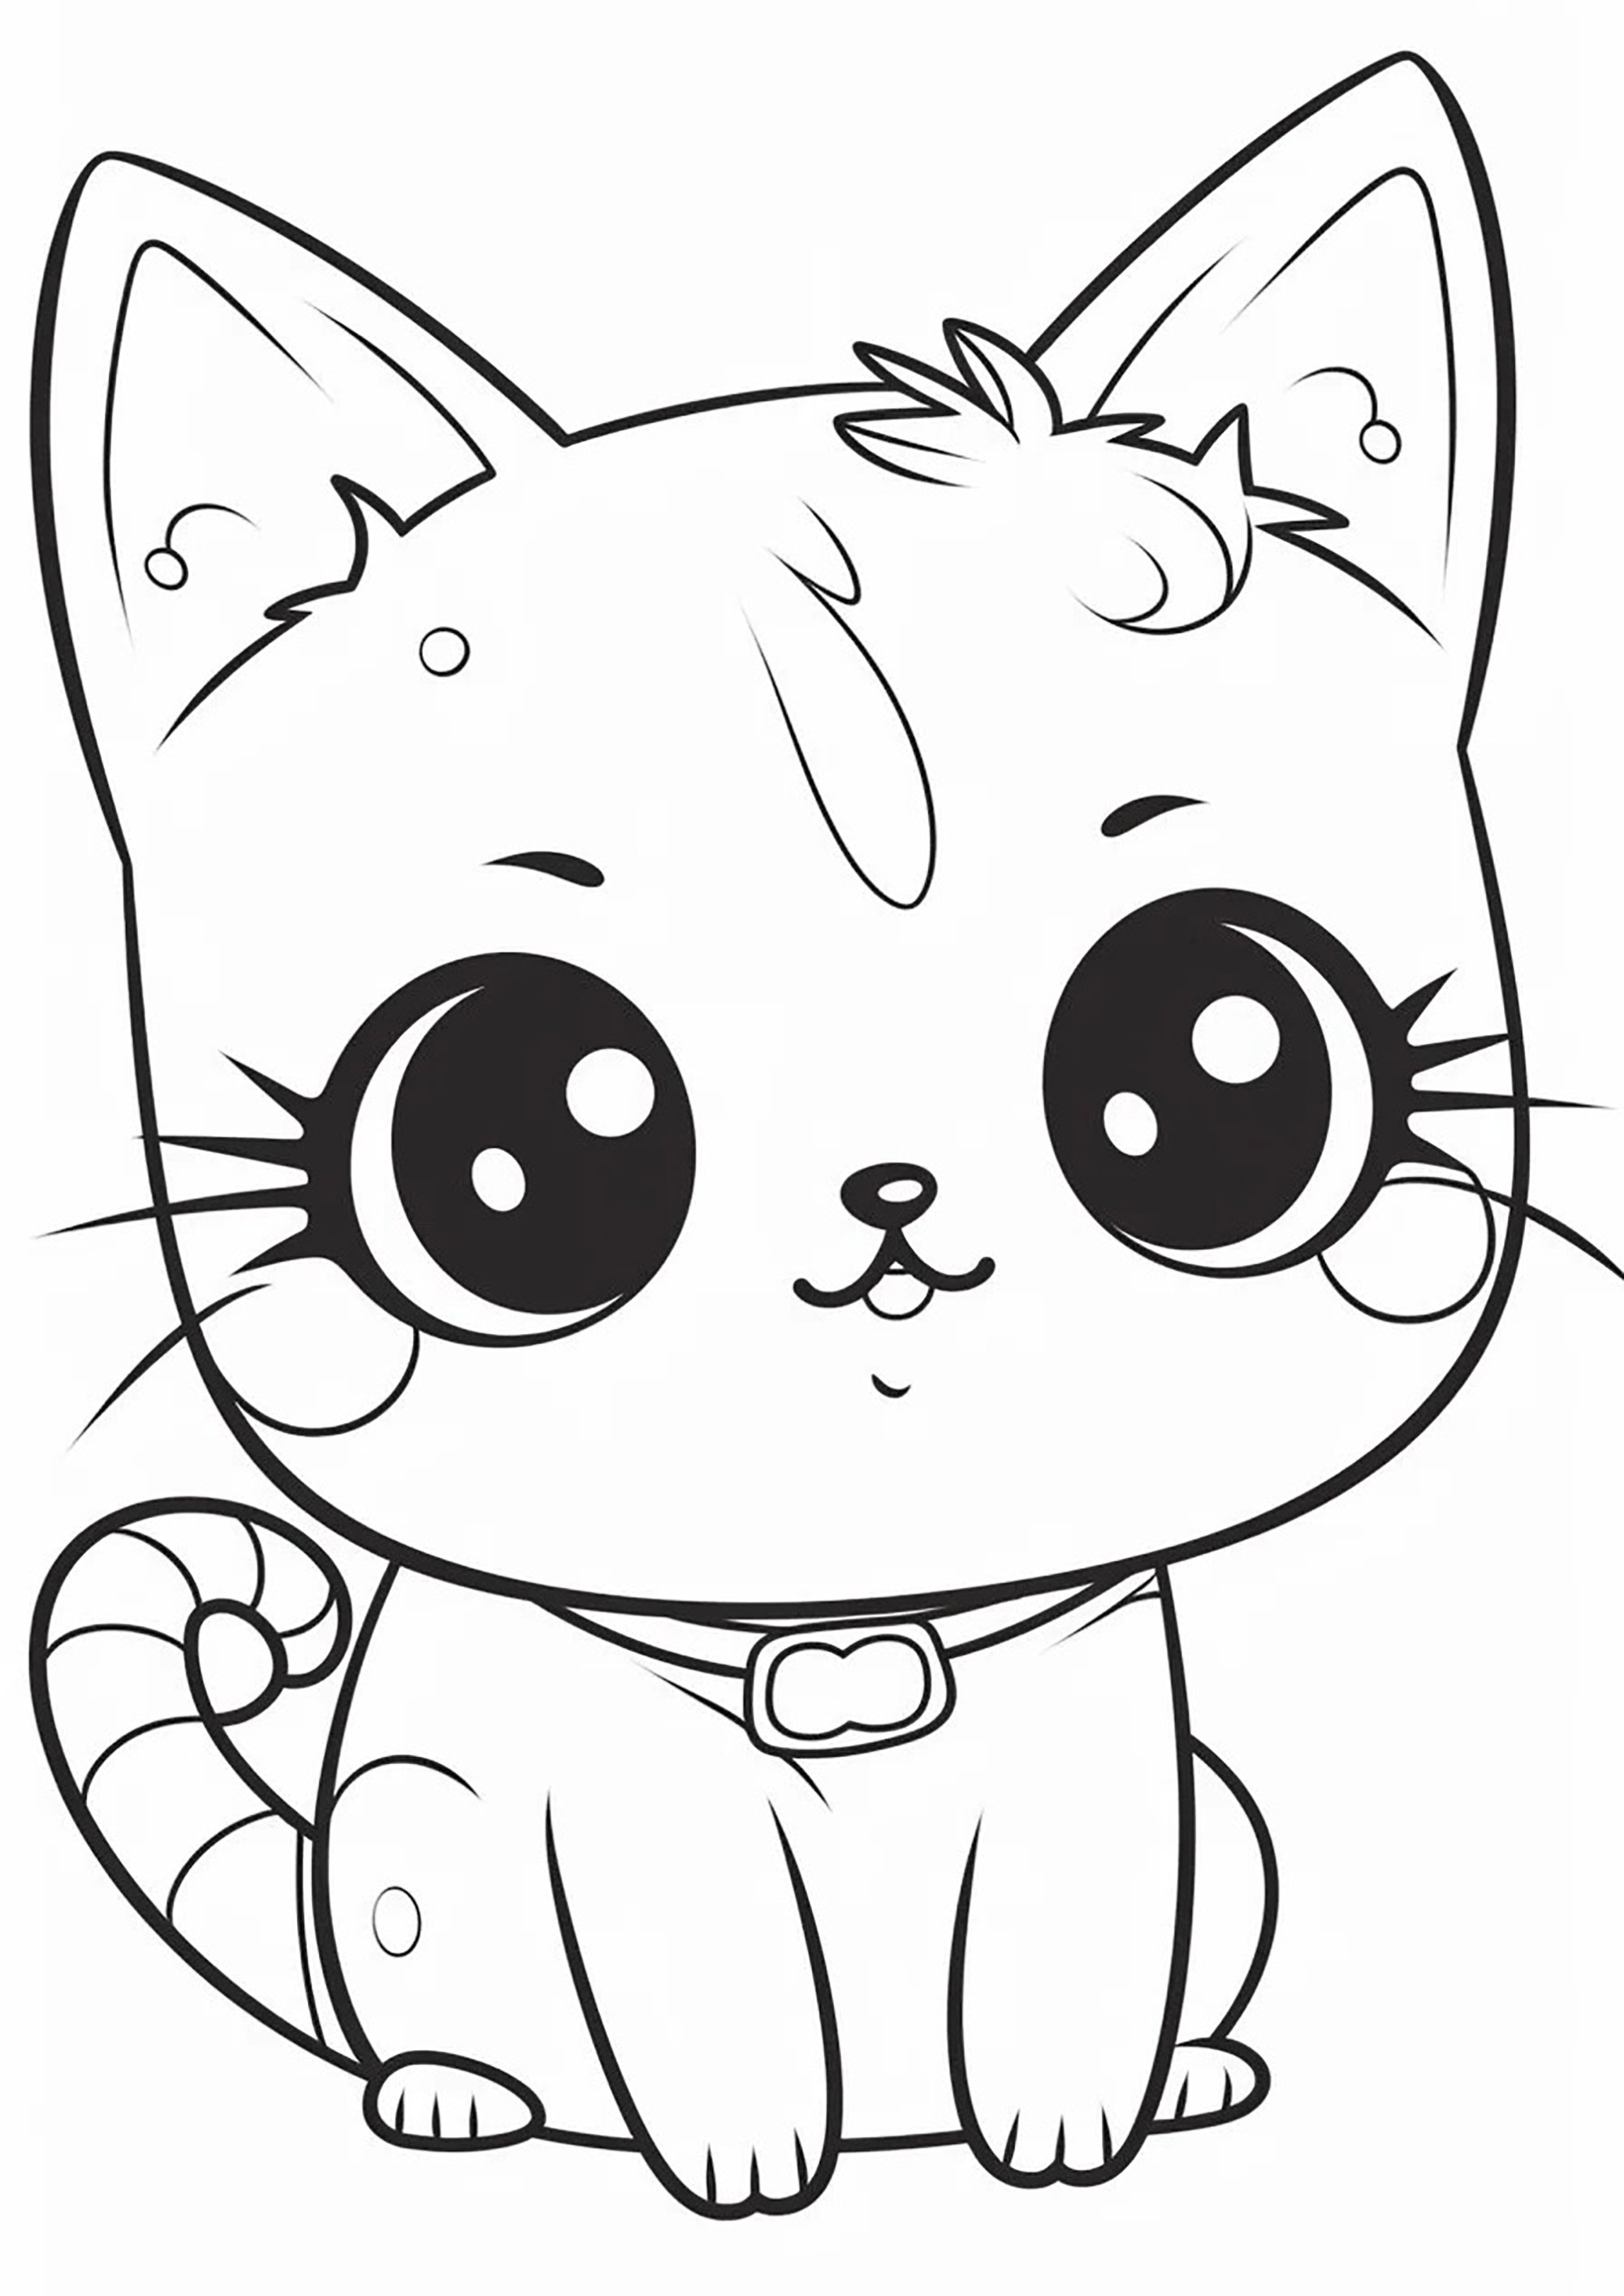 Lindo gatito de ojos grandes. Una mezcla de estilos manga y kawaii